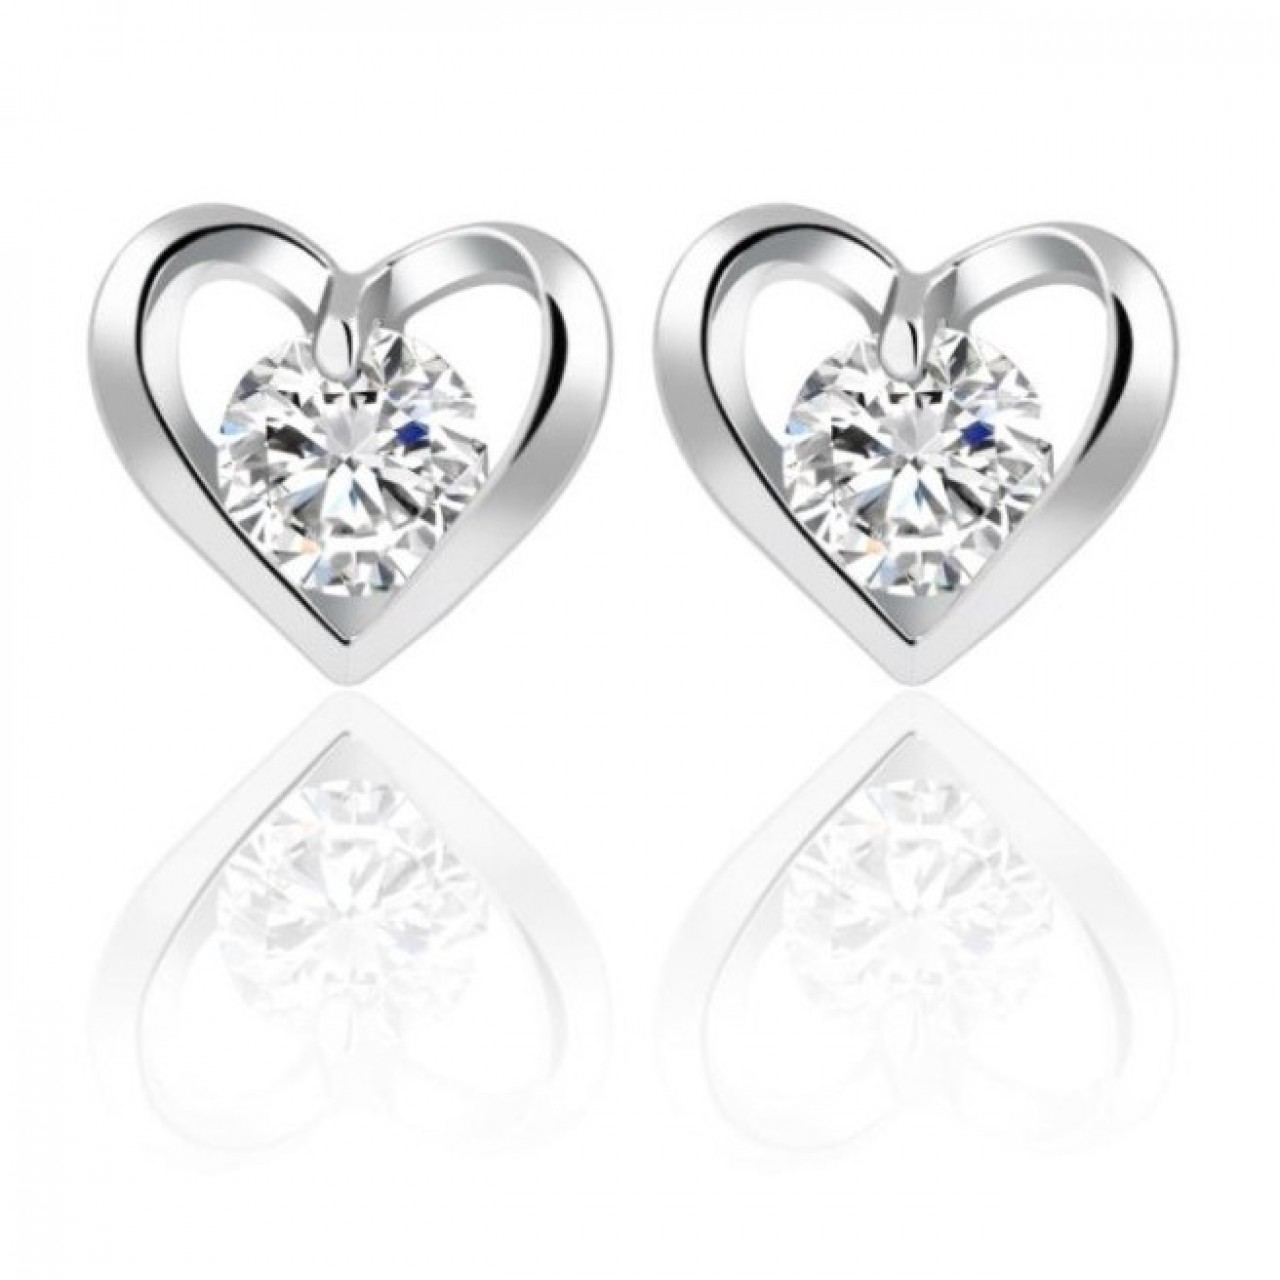 Romantic Flower Heart Crystal Stud Earrings Alloy Silver